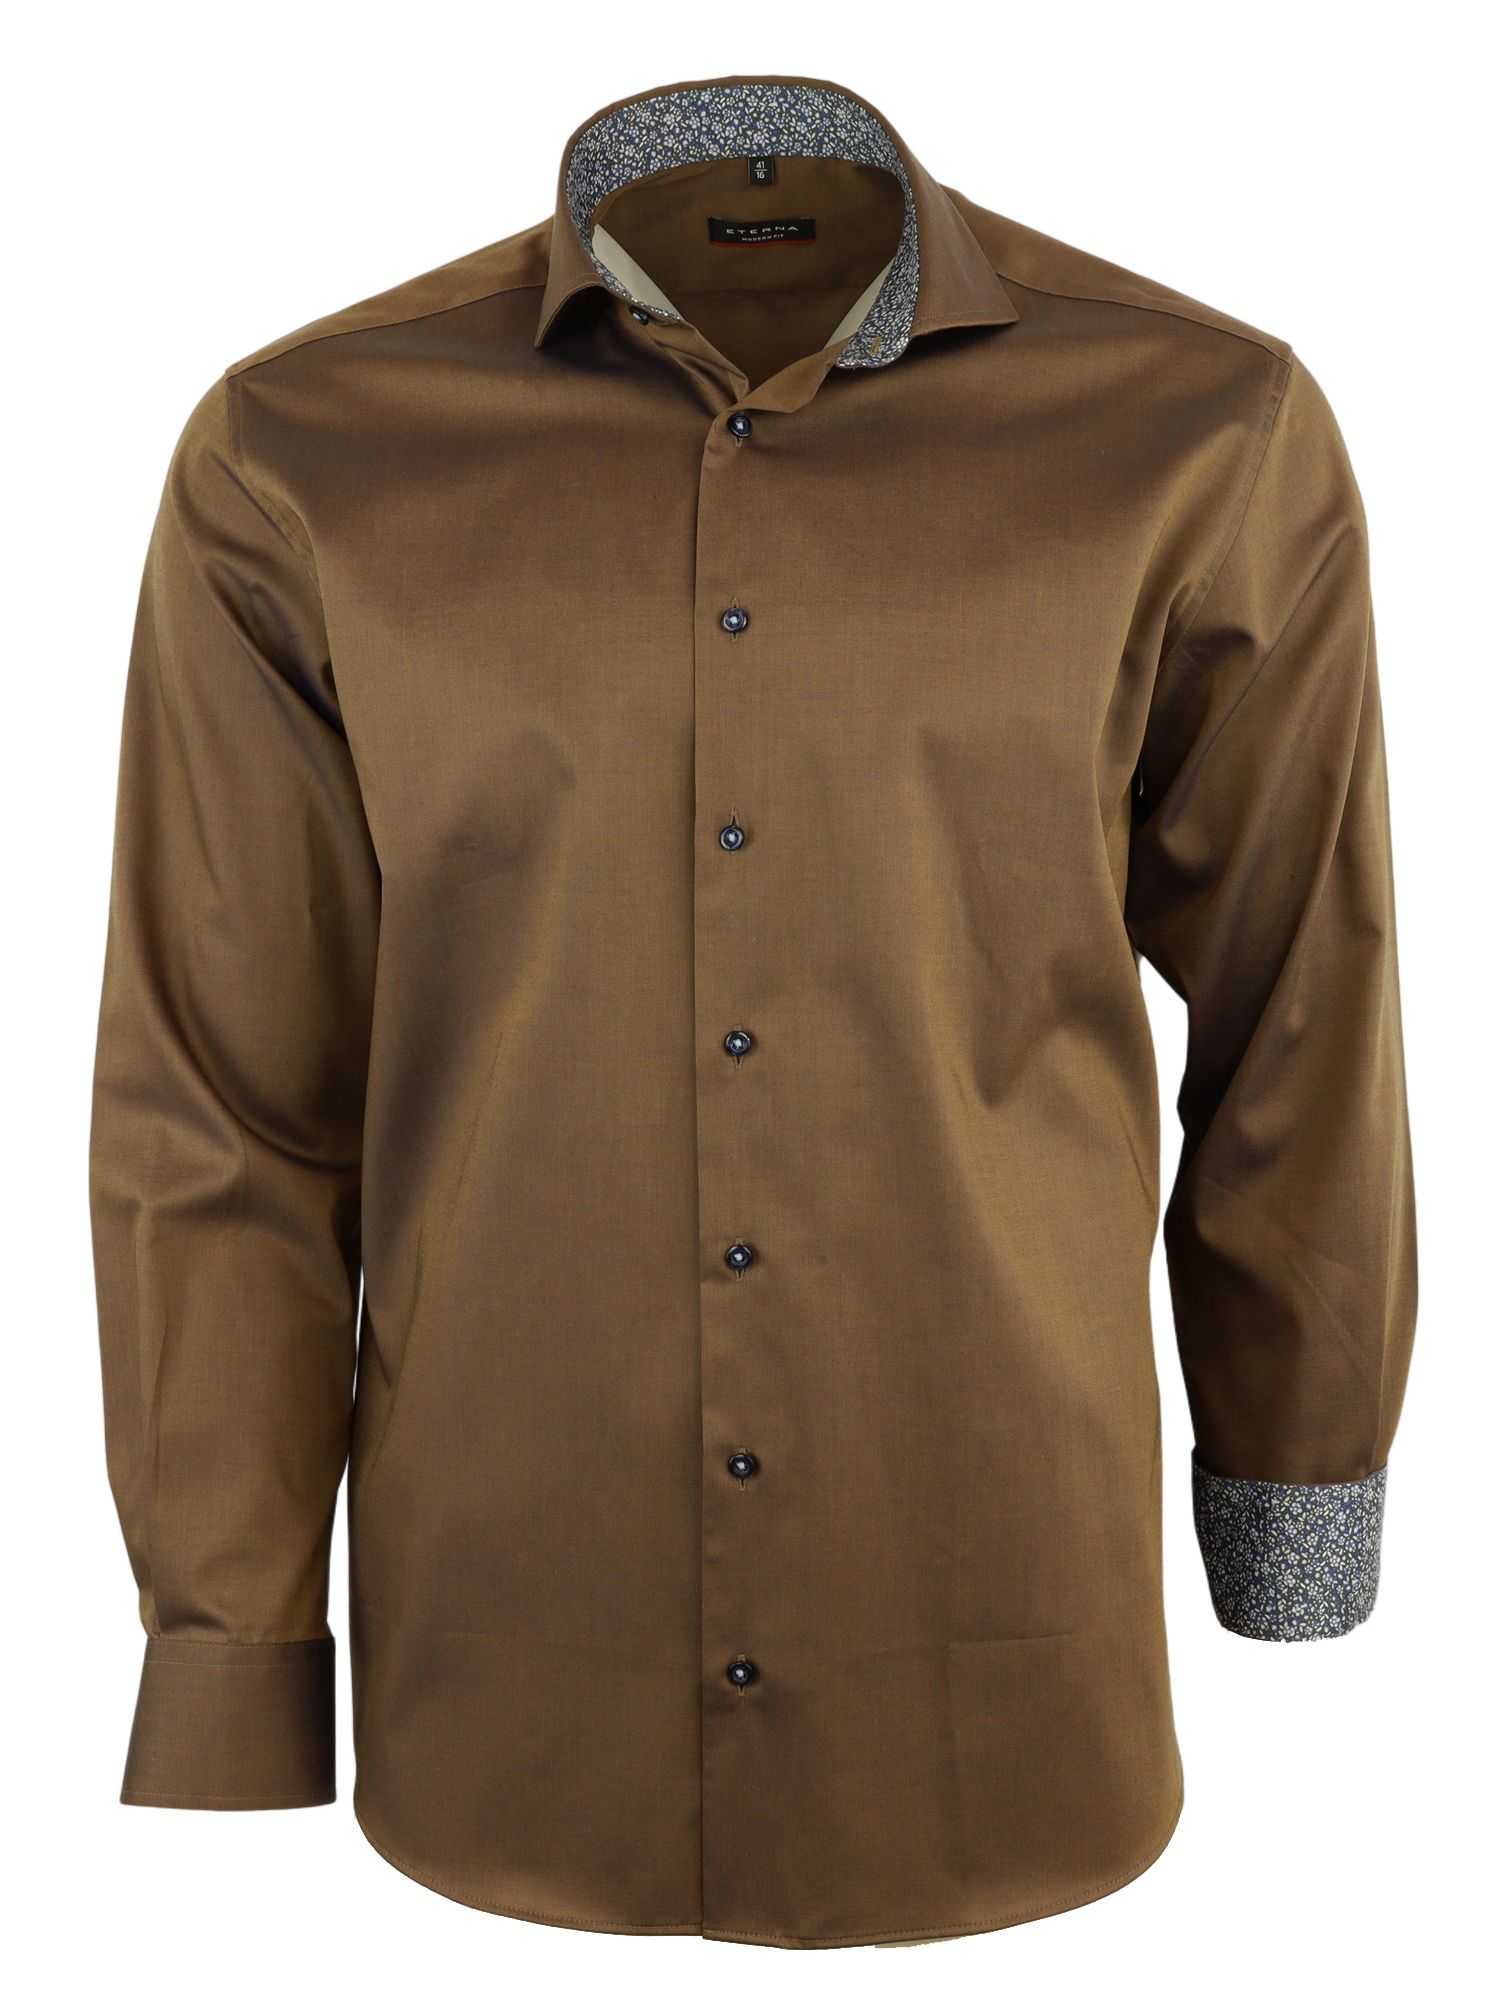 Мужская рубашка ETERNA, коричневая, цвет коричневый, размер 56 - фото 1